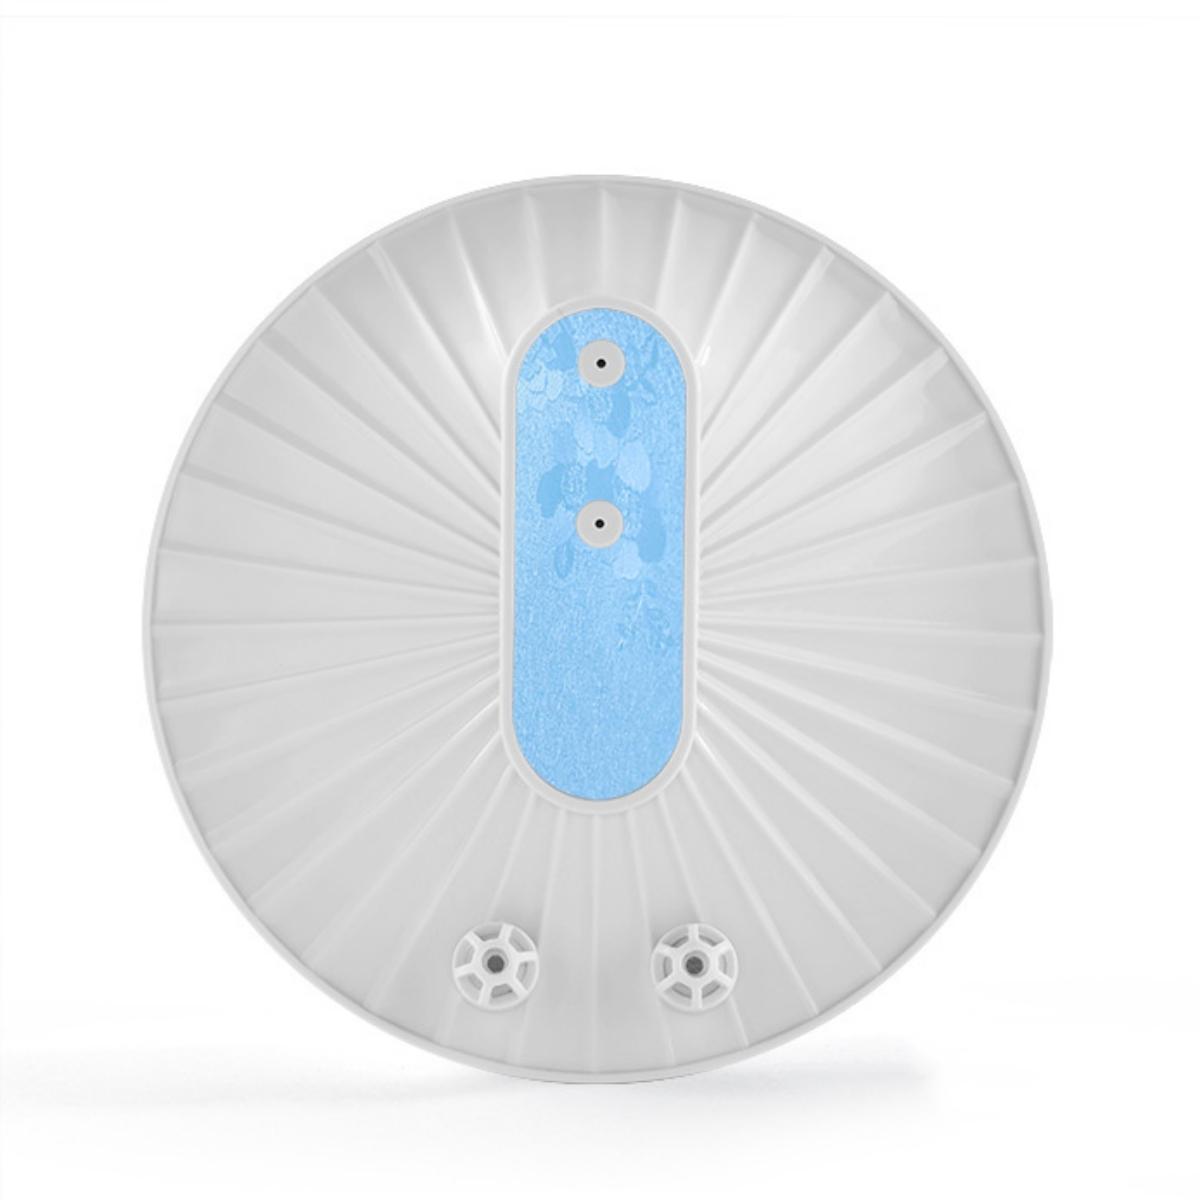 SYNTEK All-in-One Ultraschall-Geschirrspüler Kompakt Tragbar Blau Wiederaufladbar Ultraschallreiniger